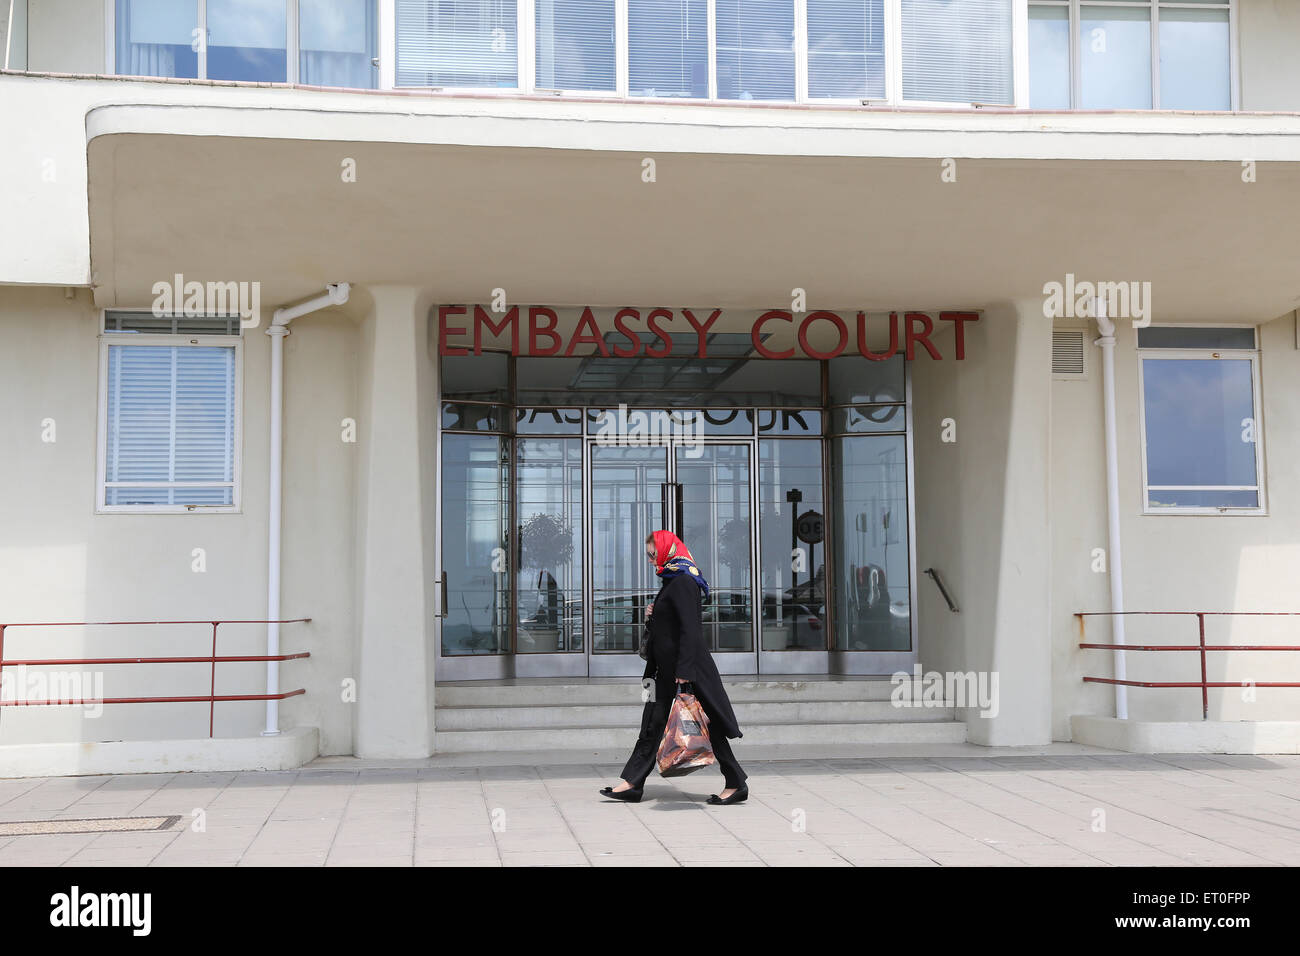 Art Deco modernista / ingresso alla corte di ambasciata in Brighton. Foto di James Boardman Foto Stock